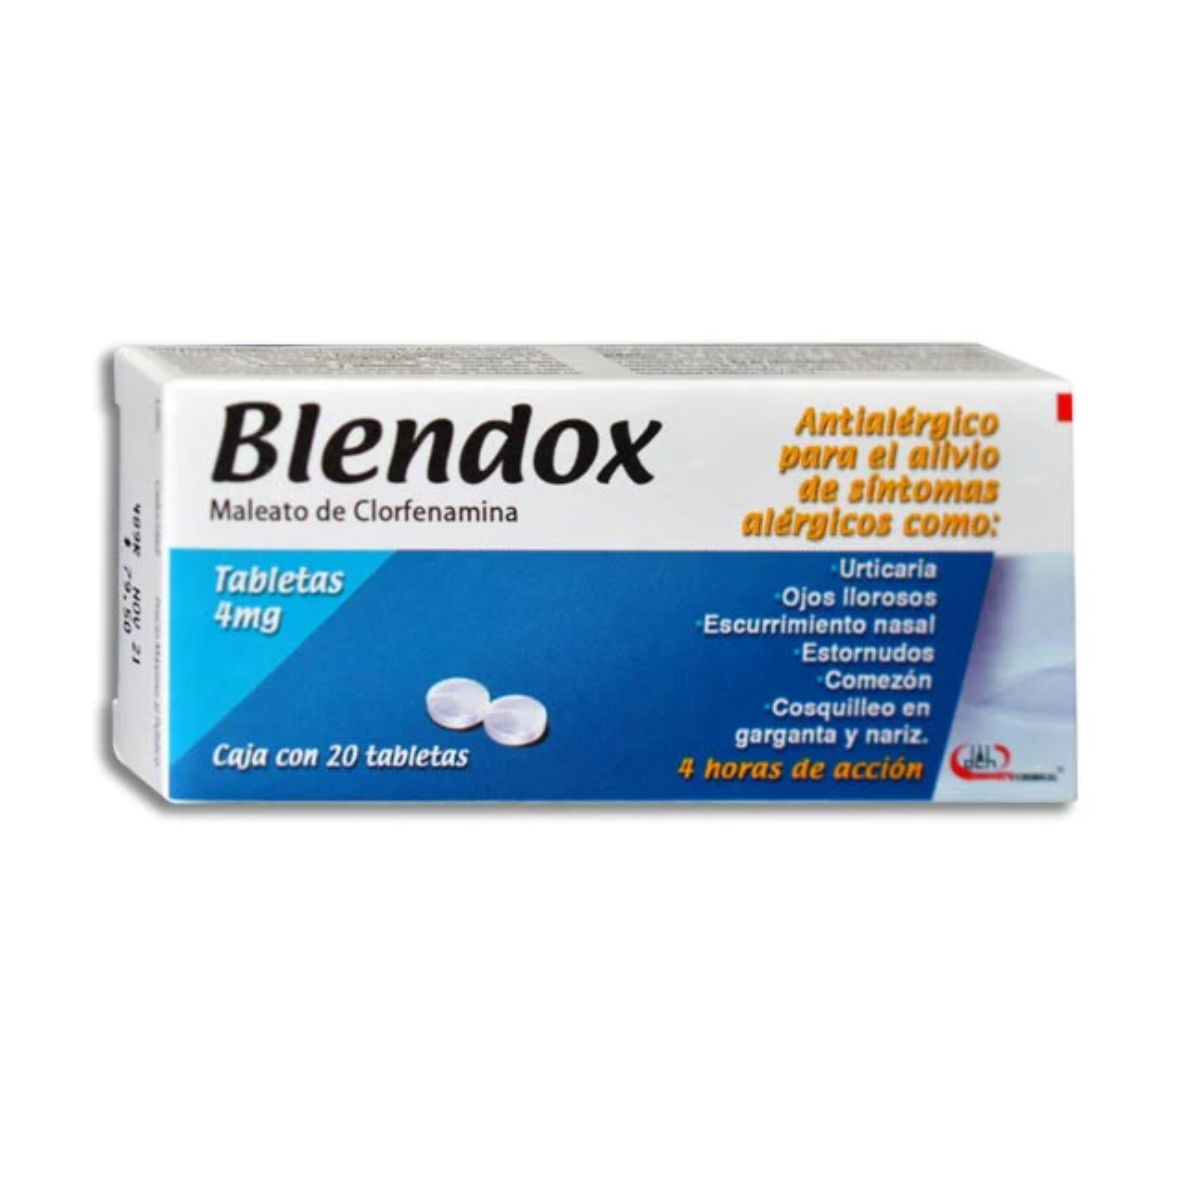 Blendox (Clorfenamina Compuesta) 4 mg Caja con 20 Tabletas